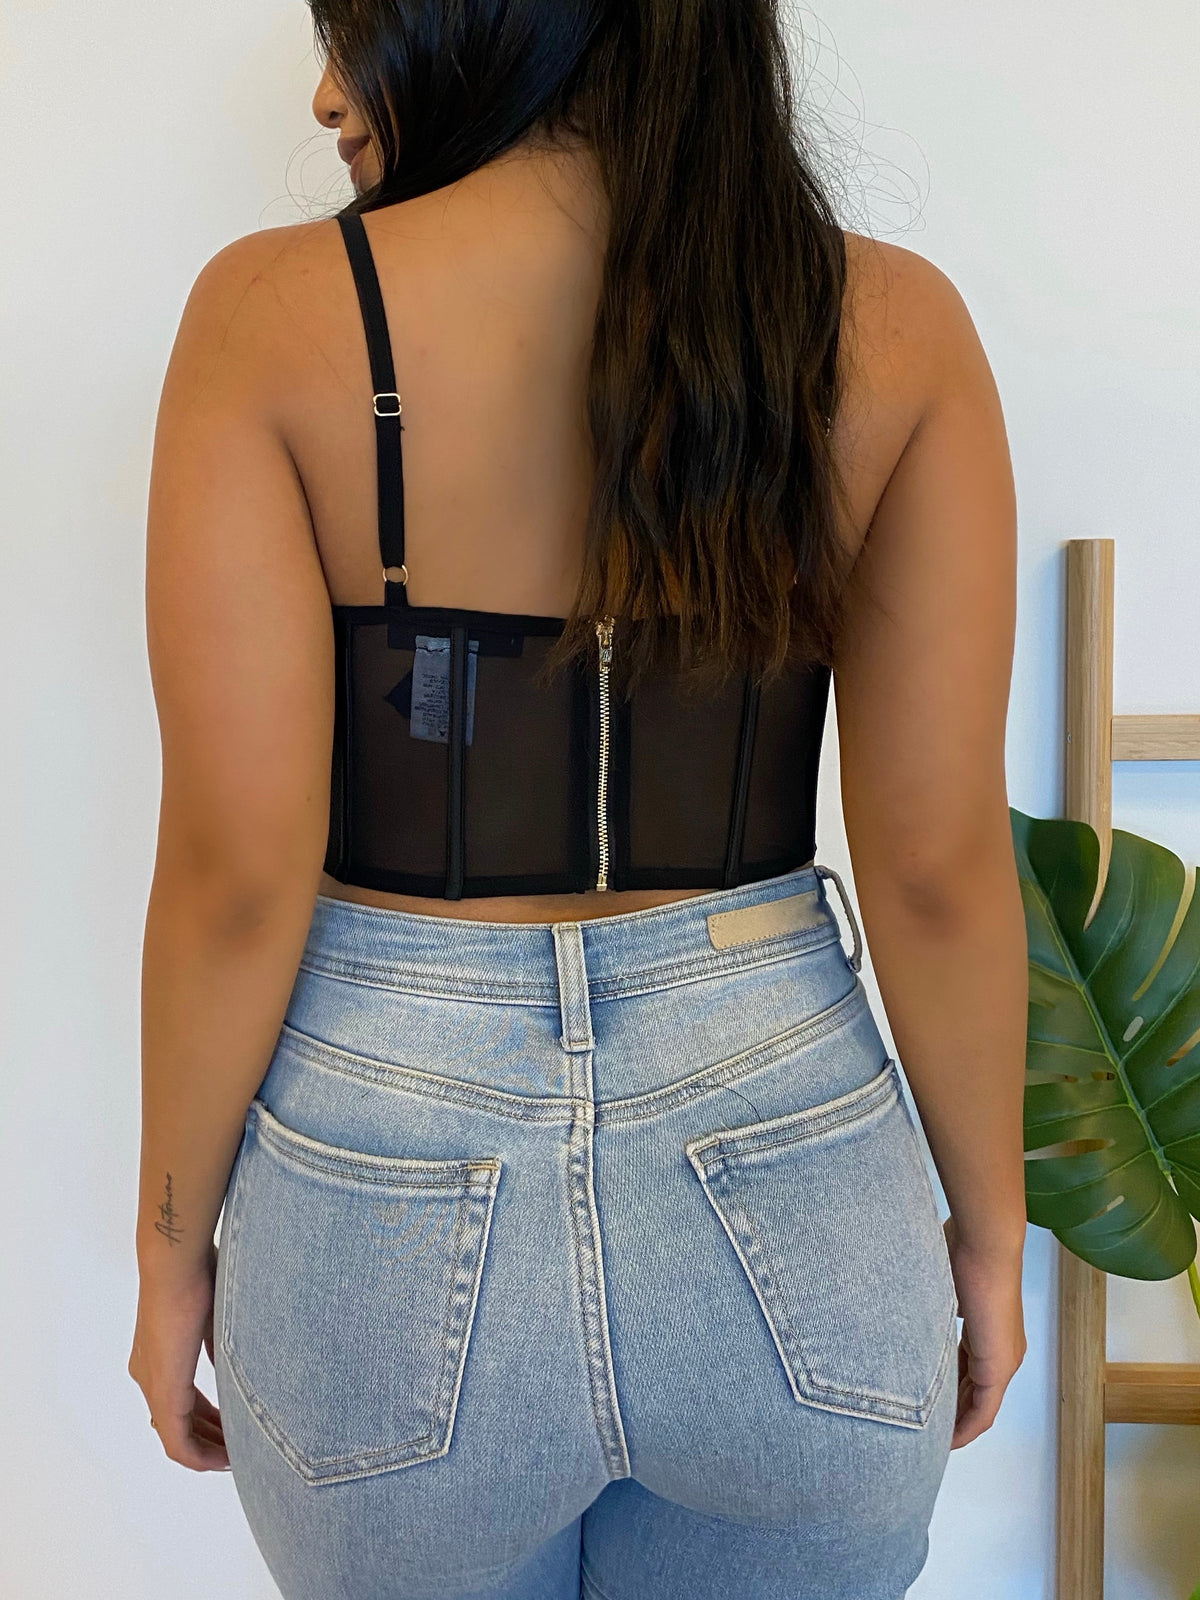 black corset top, mesh top, crop top, v cut, back zipper, adjustable straps, satin